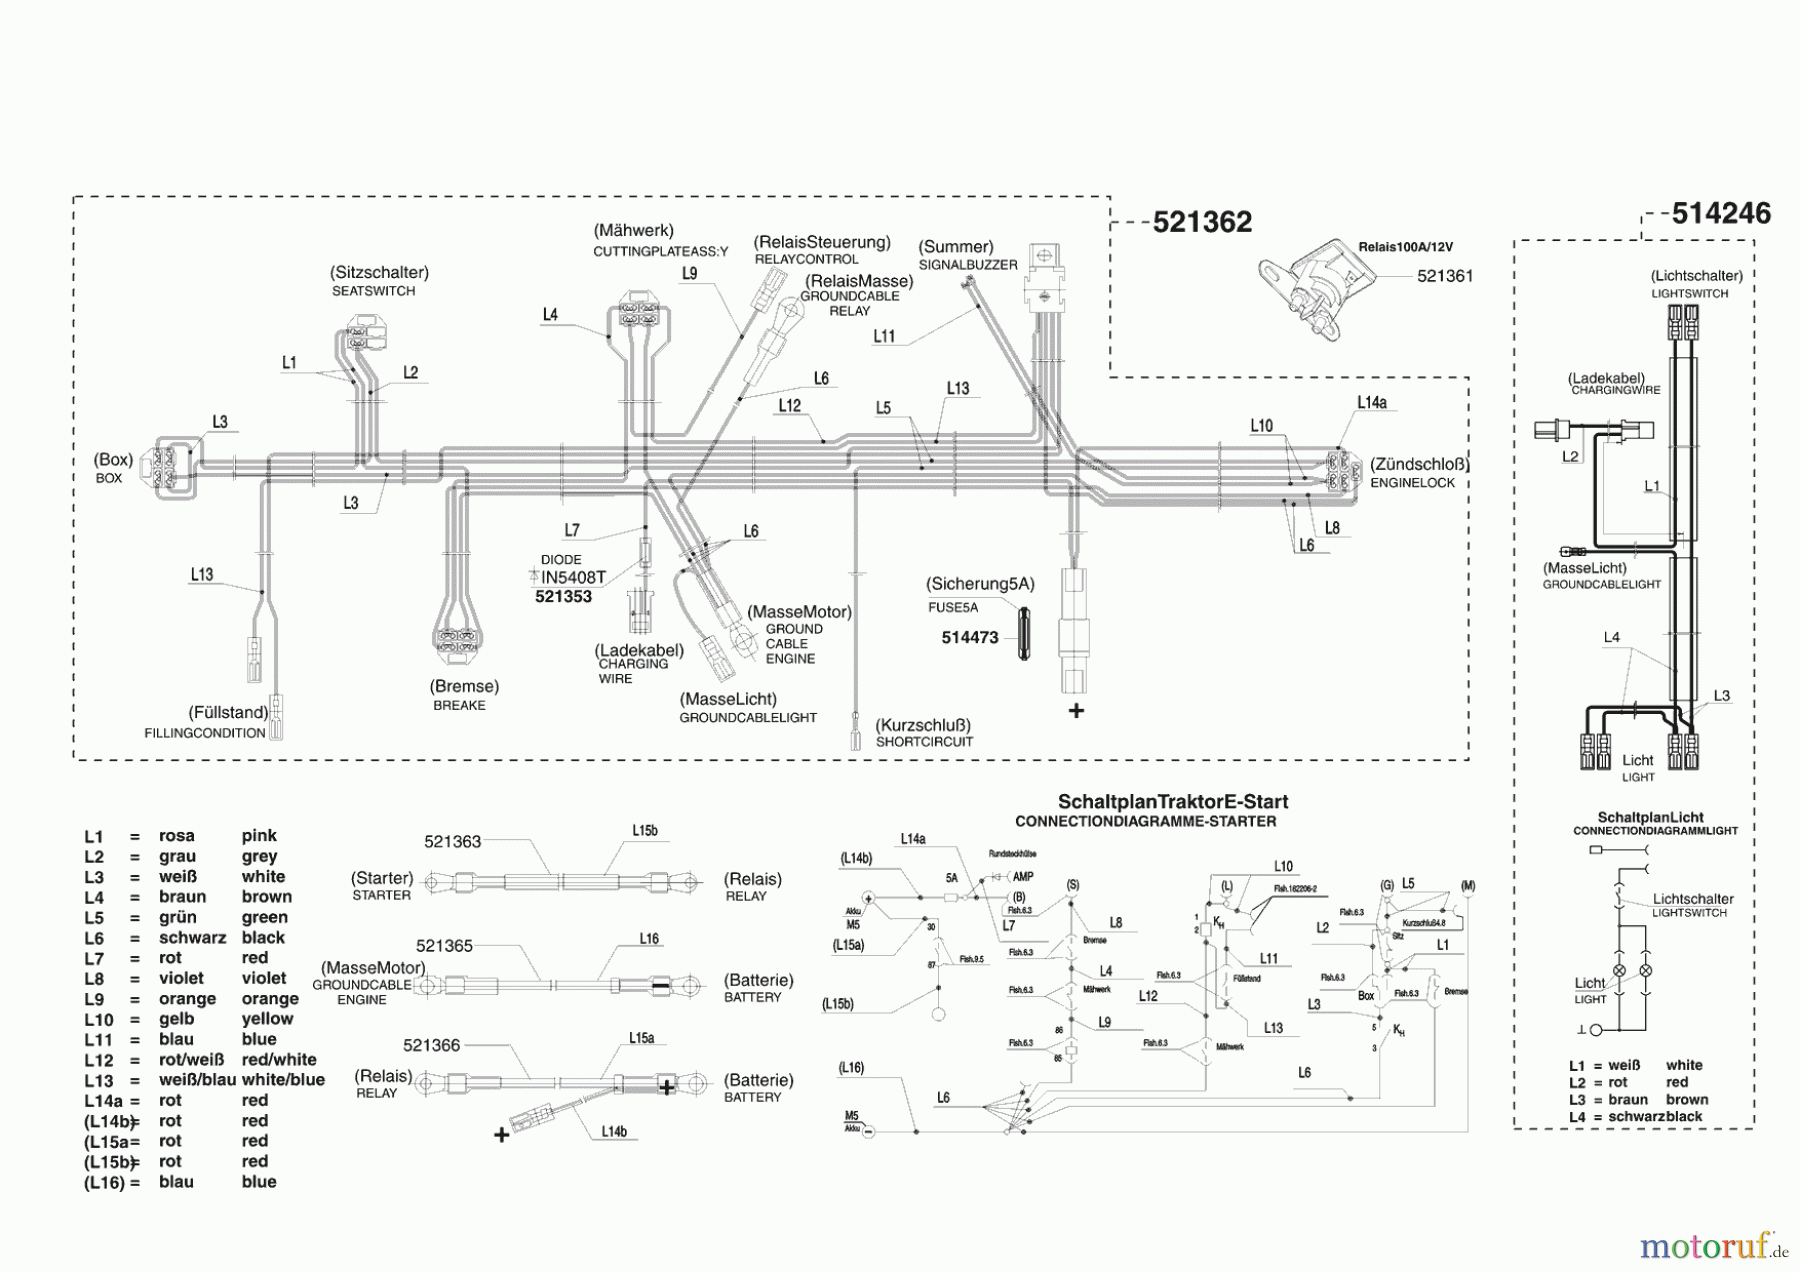  Powerline Gartentechnik Rasentraktor T13-82 Seite 8